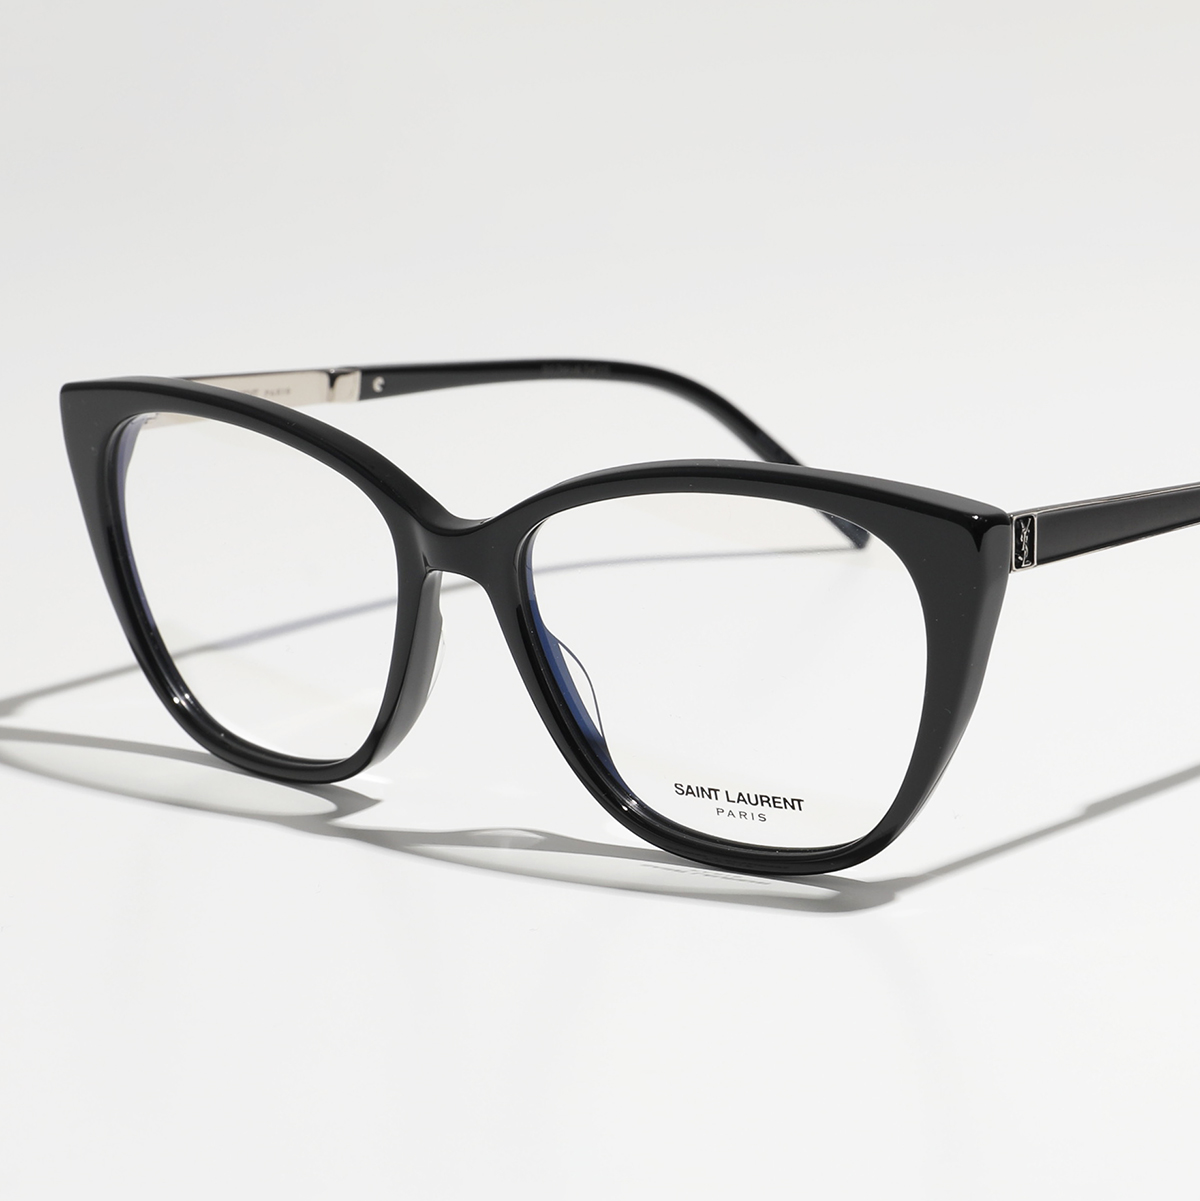 【返品保証対象】SAINT LAURENT サンローラン メガネ SL M72 メンズ ウェリントン型 伊達メガネ 眼鏡 めがね 黒縁メガネ カサンドラロゴ アイウェア 001